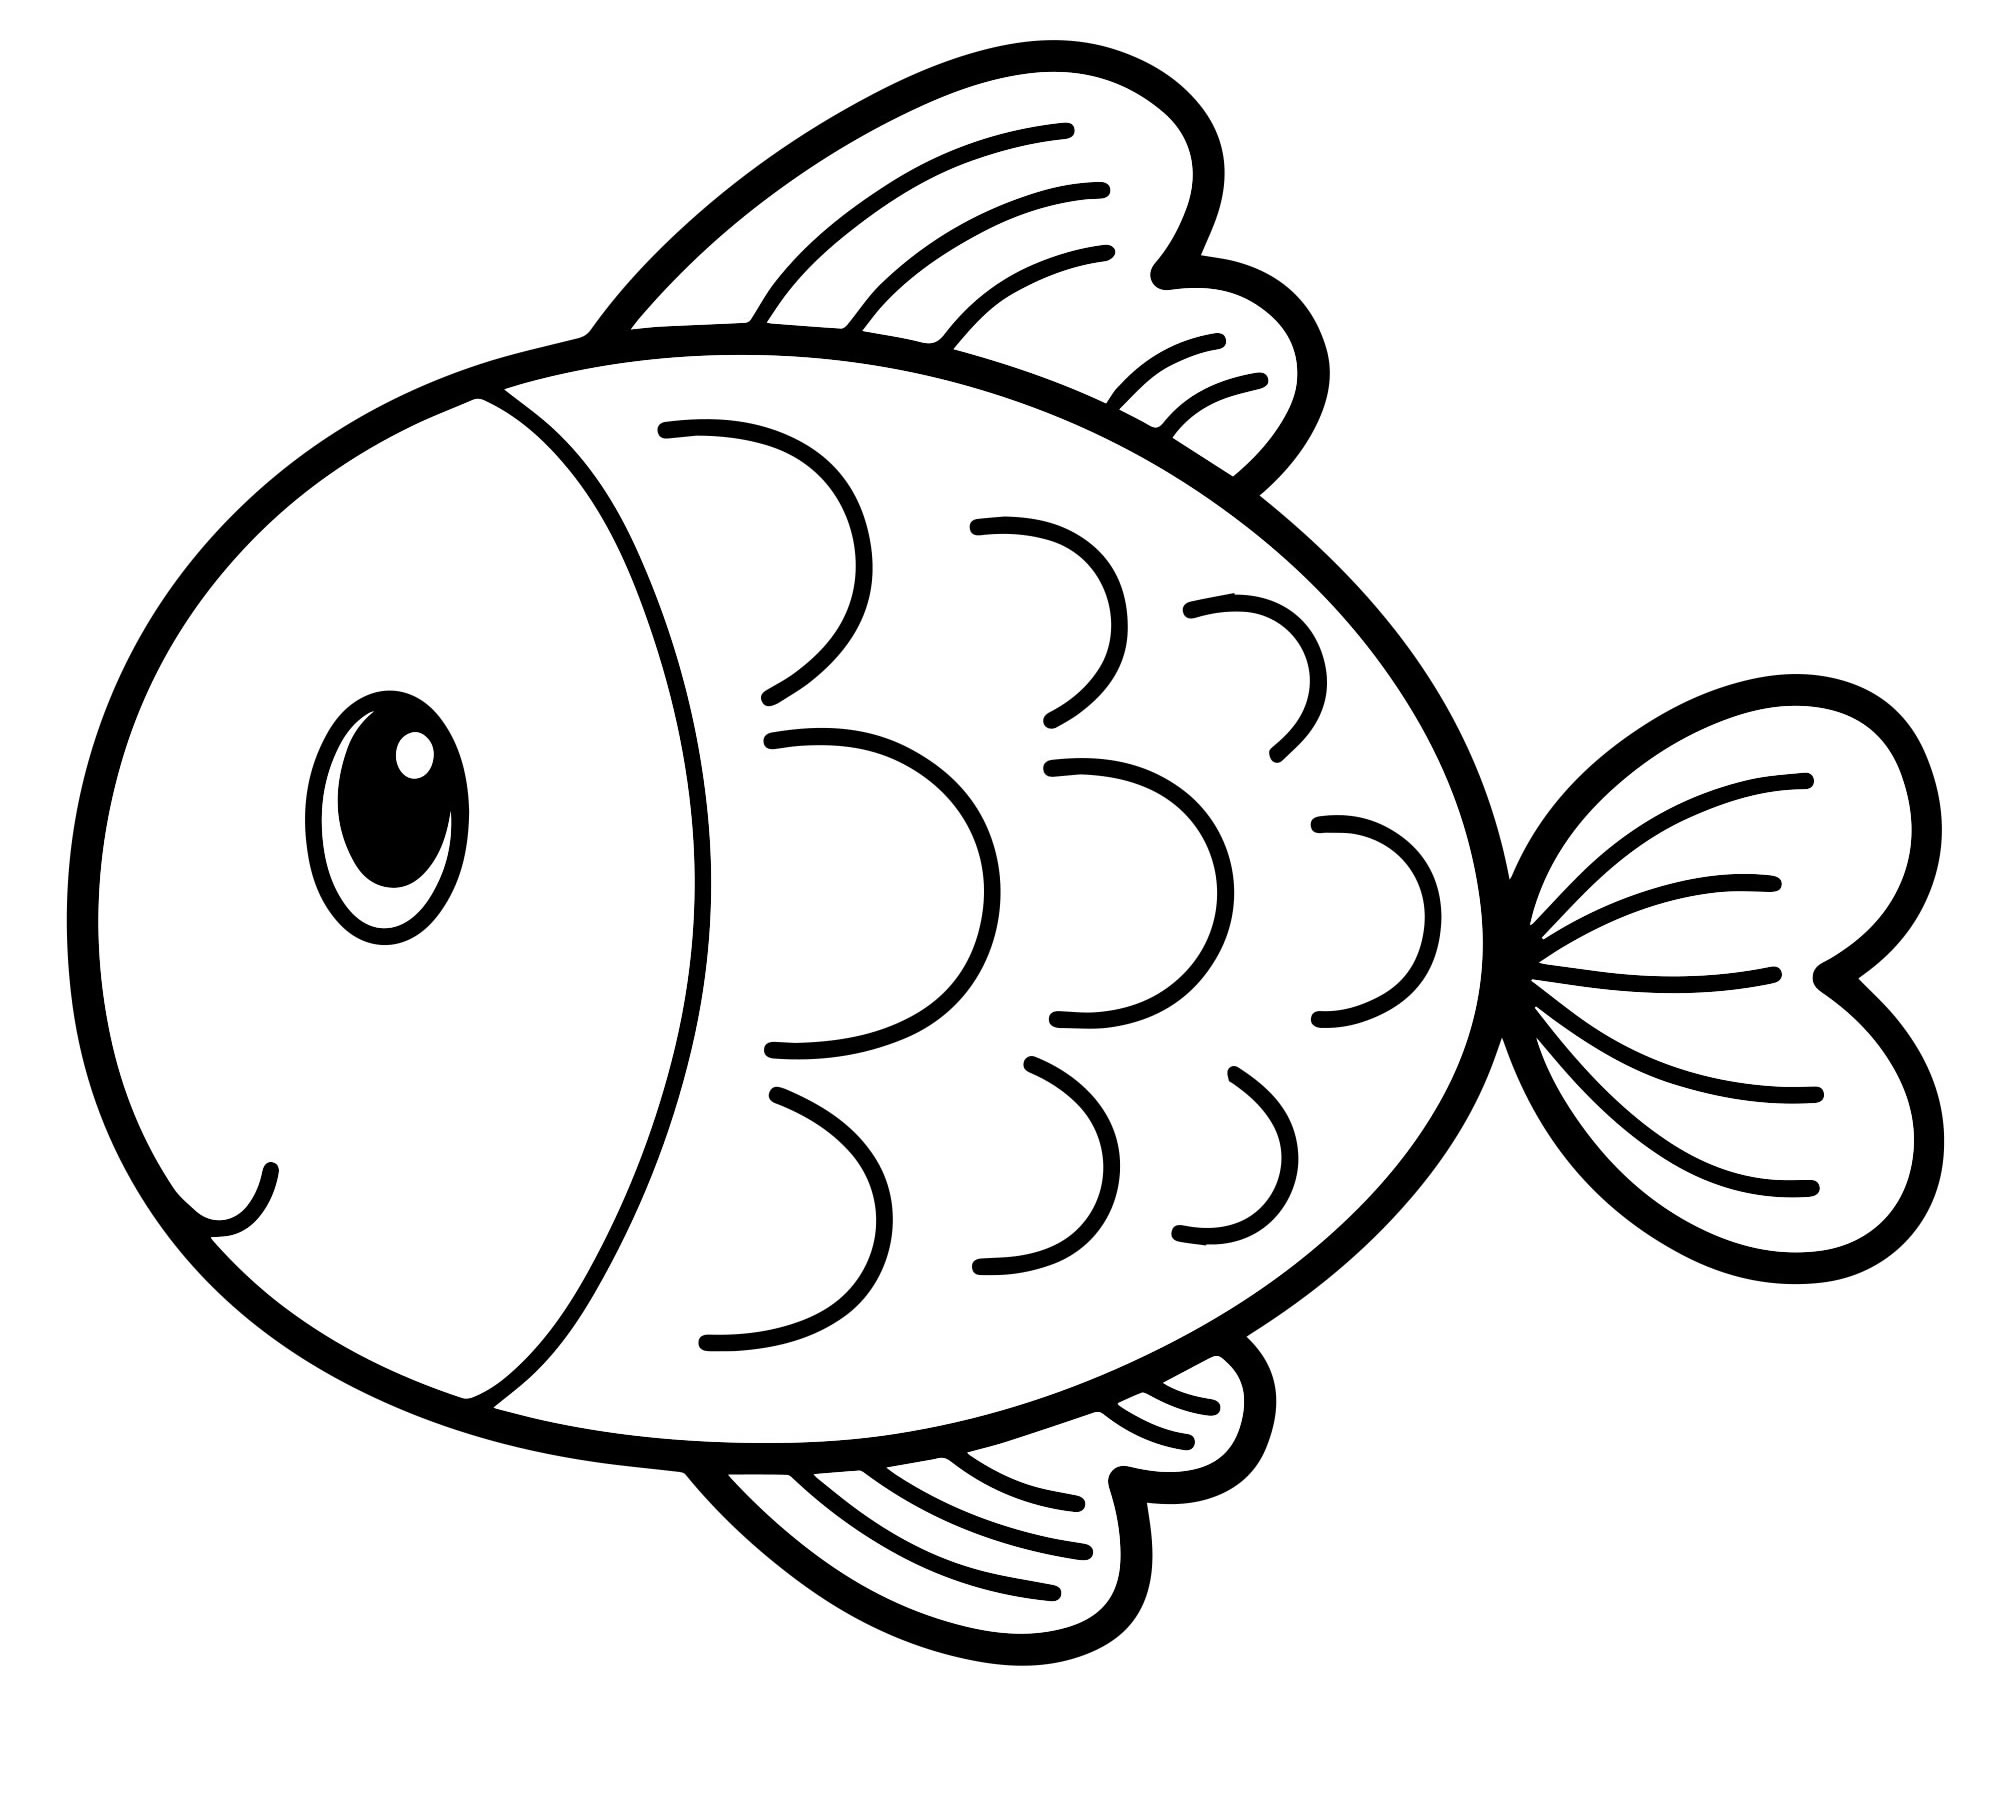 Раскраска рыбки для детей 5 6 лет. Раскраска рыбка. Рыба раскраска для детей. Рыбка раскраска для детей. Раскраскаидля малышей.